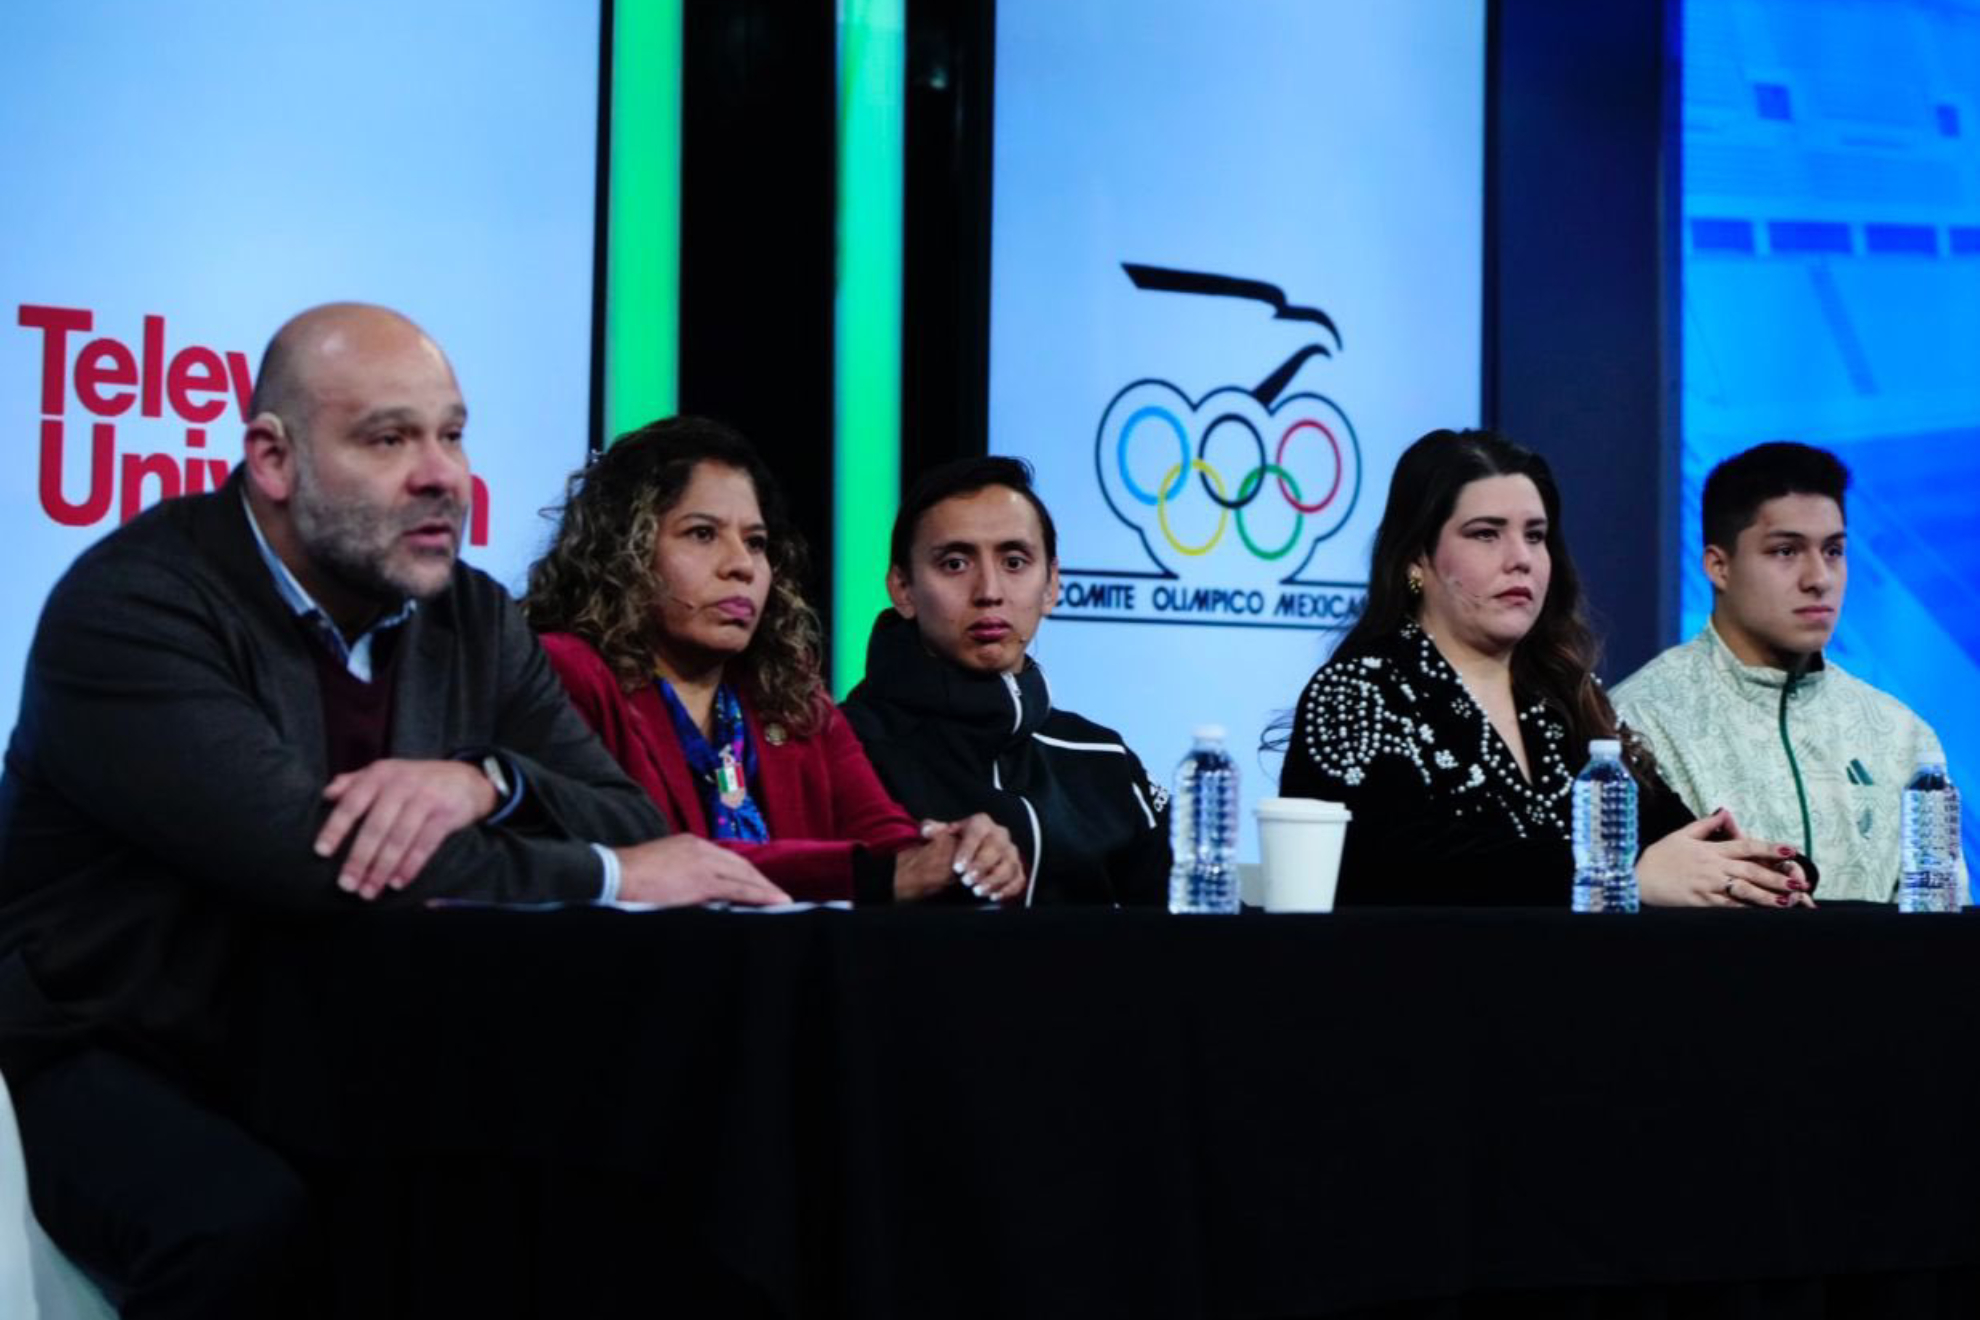 Se anunci la alianza entre Televisa Univision y el COM para el proyecto "Todos Somos Olmpicos"